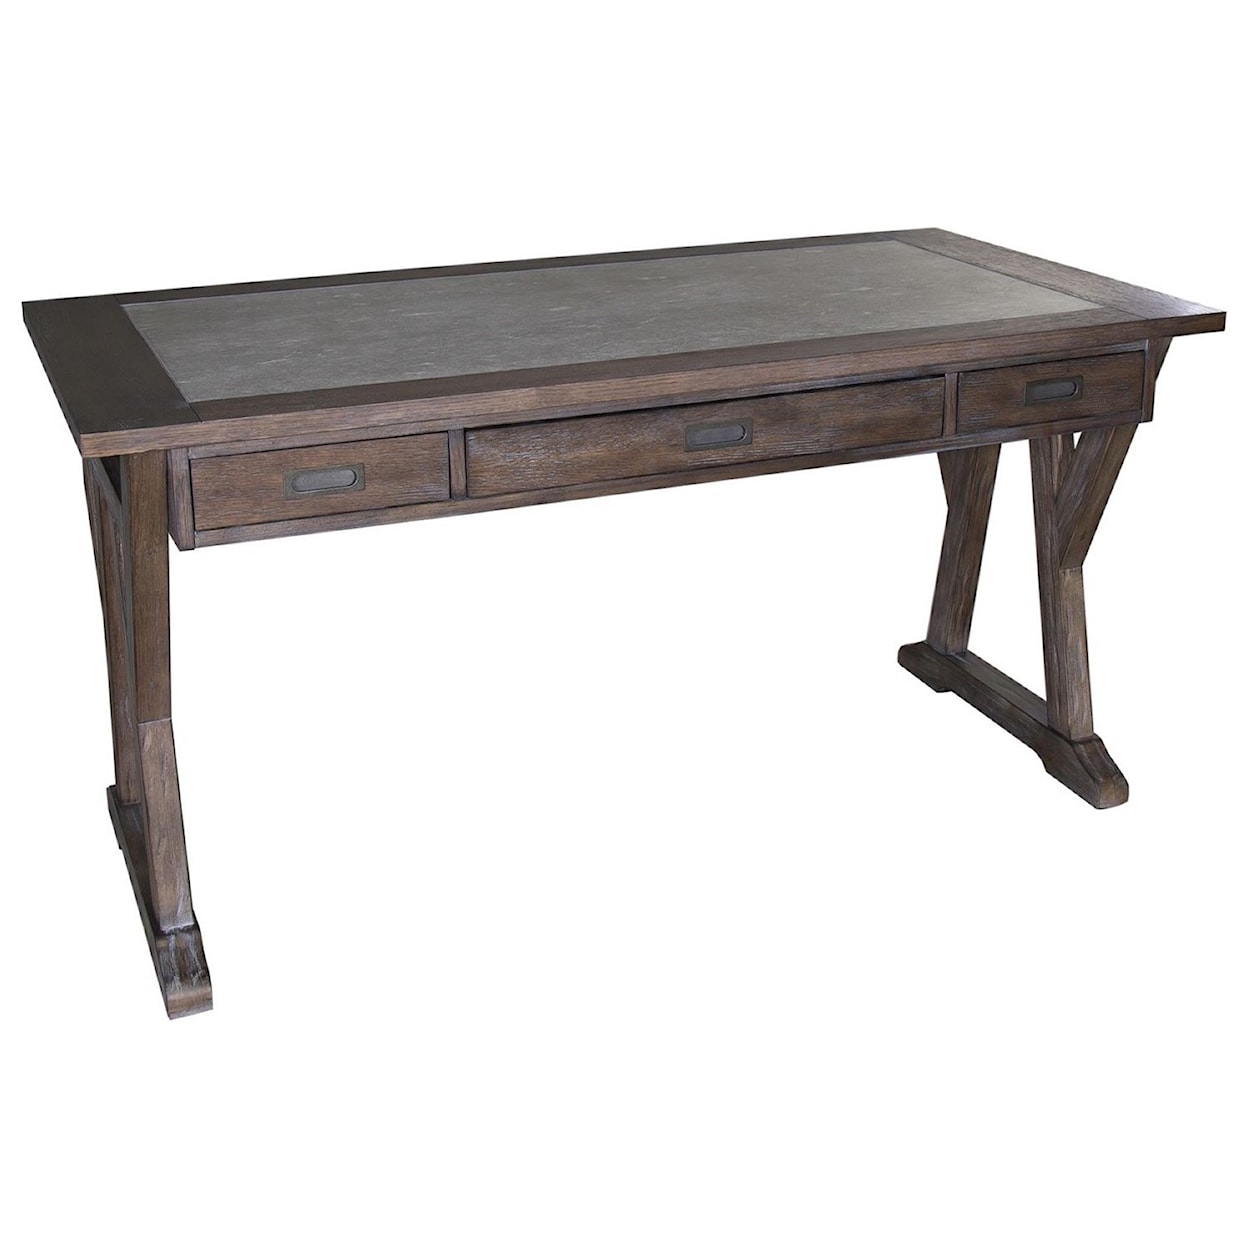 Liberty Furniture Stone Brook Complete 3-Piece Desk